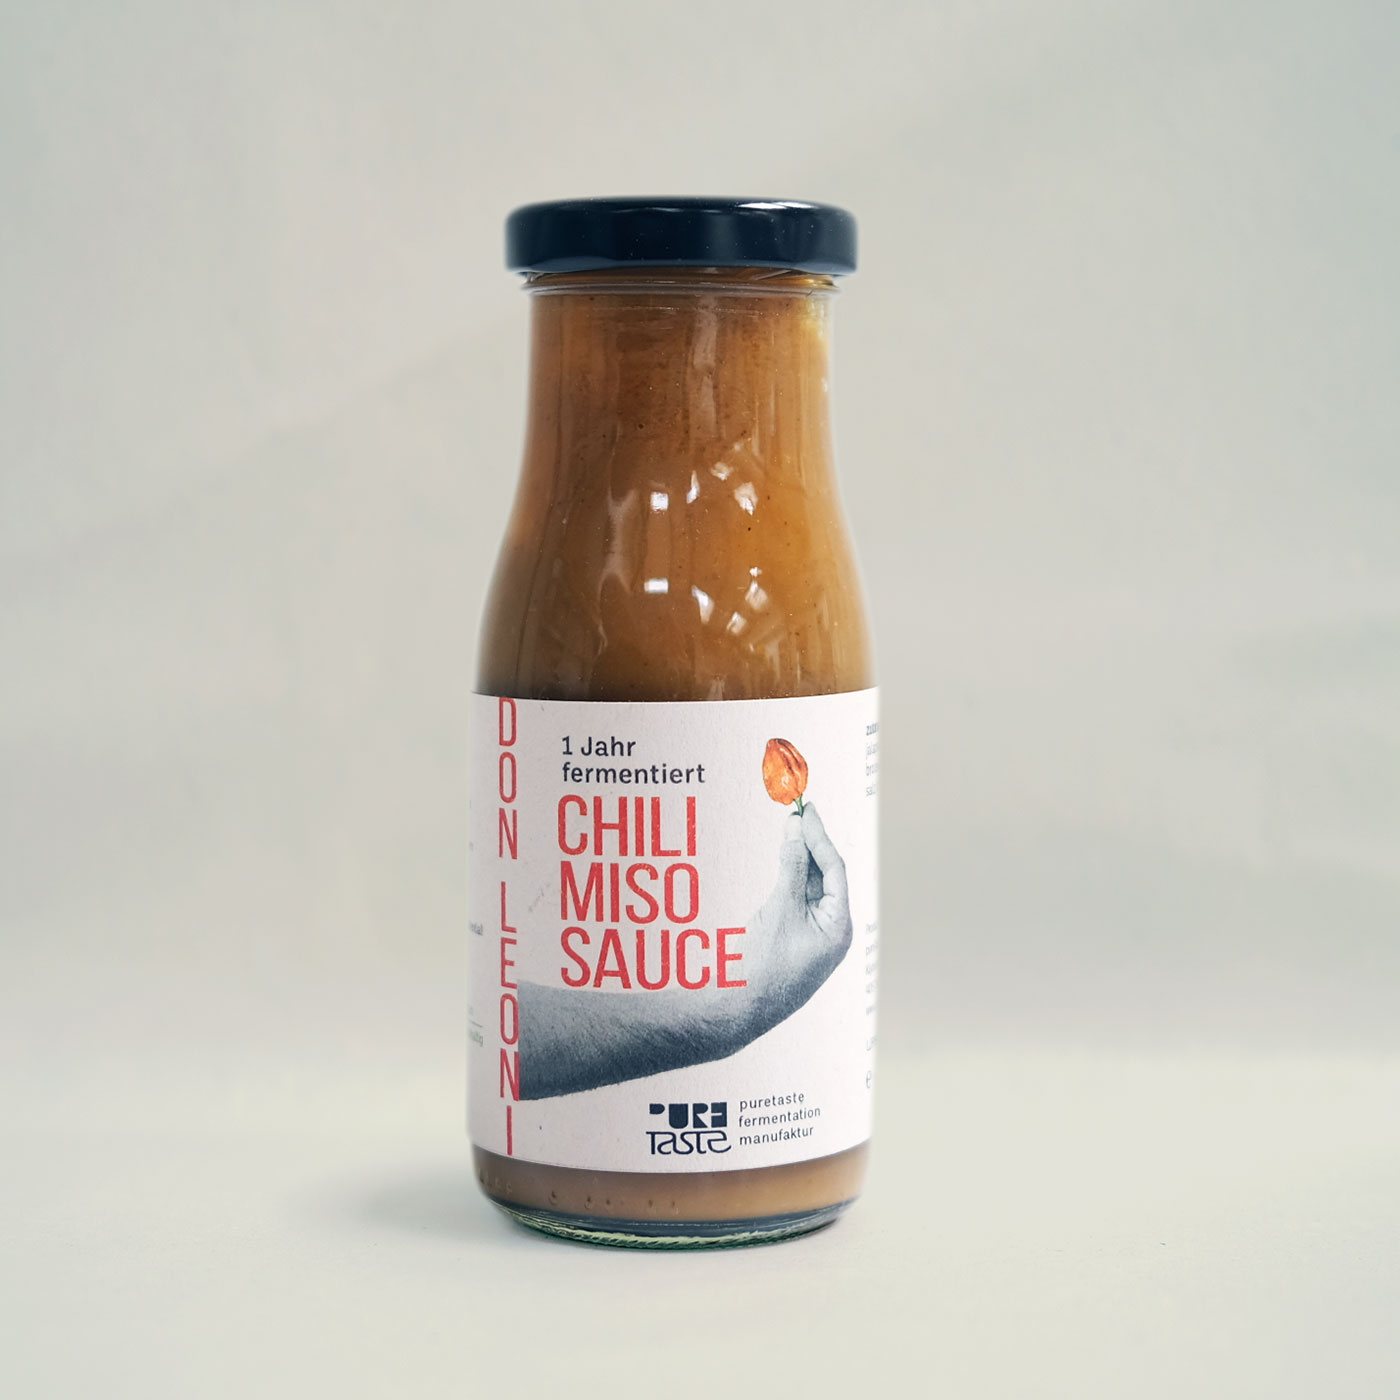 Chili Miso Sauce – 1 Jahr fermentiert